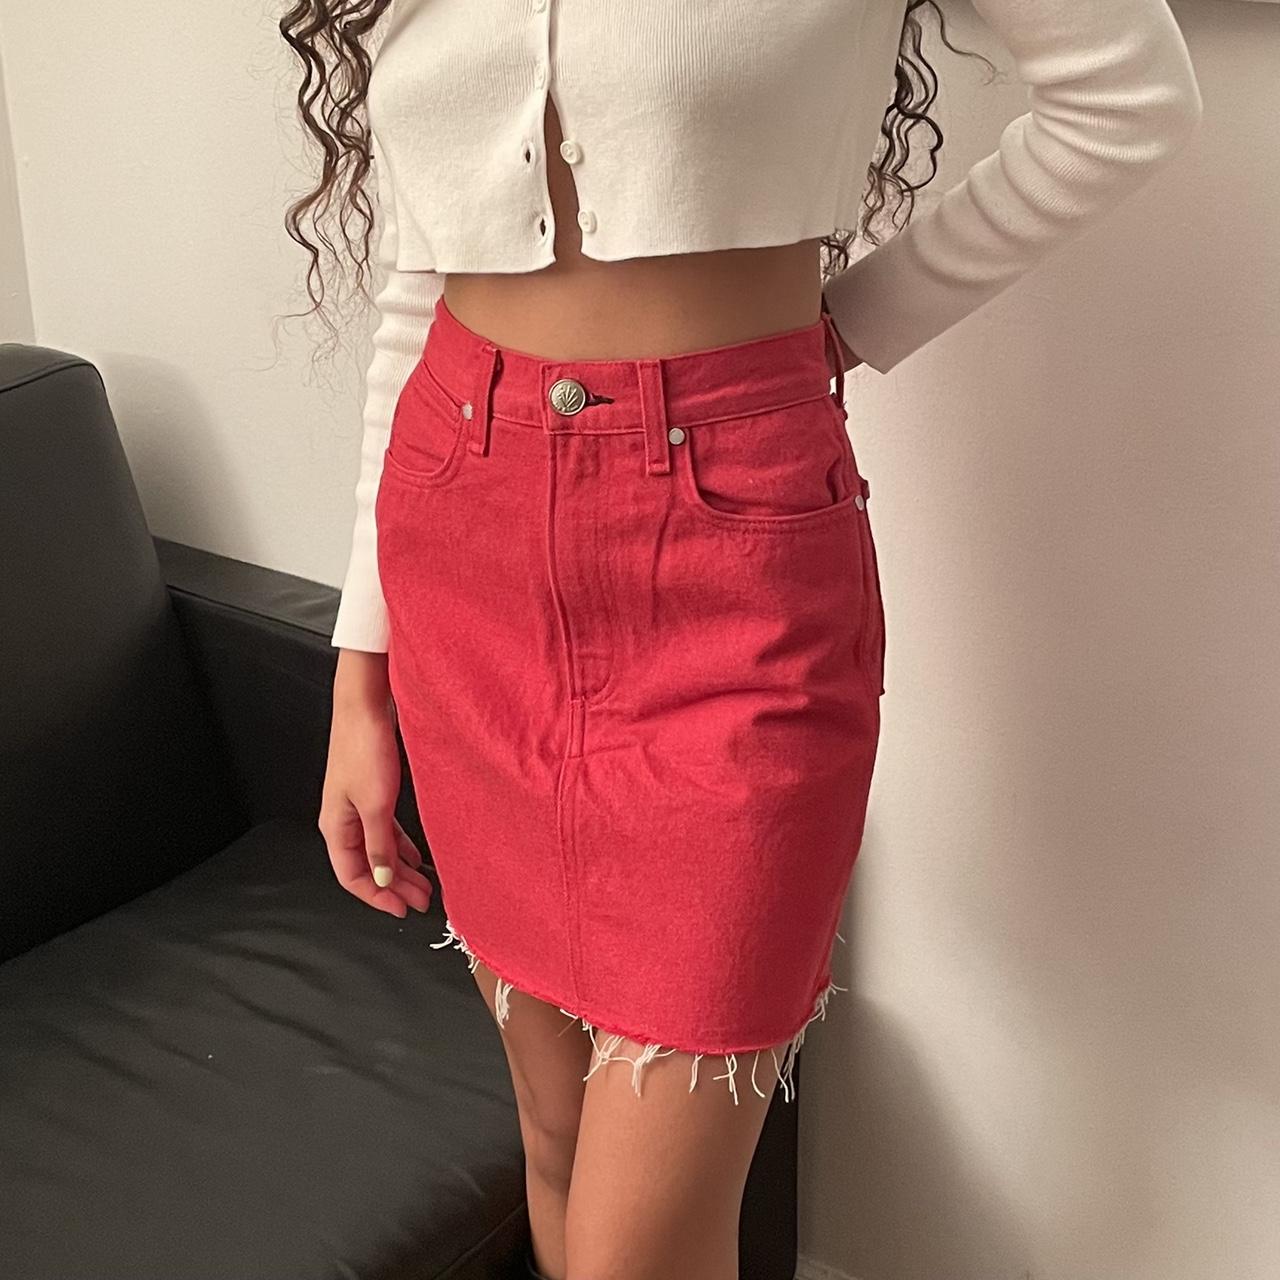 Hudson Jeans Women's Viper Mini Denim Skirt Red Cherry Cutoff Raw Hem sz  24/00 | eBay